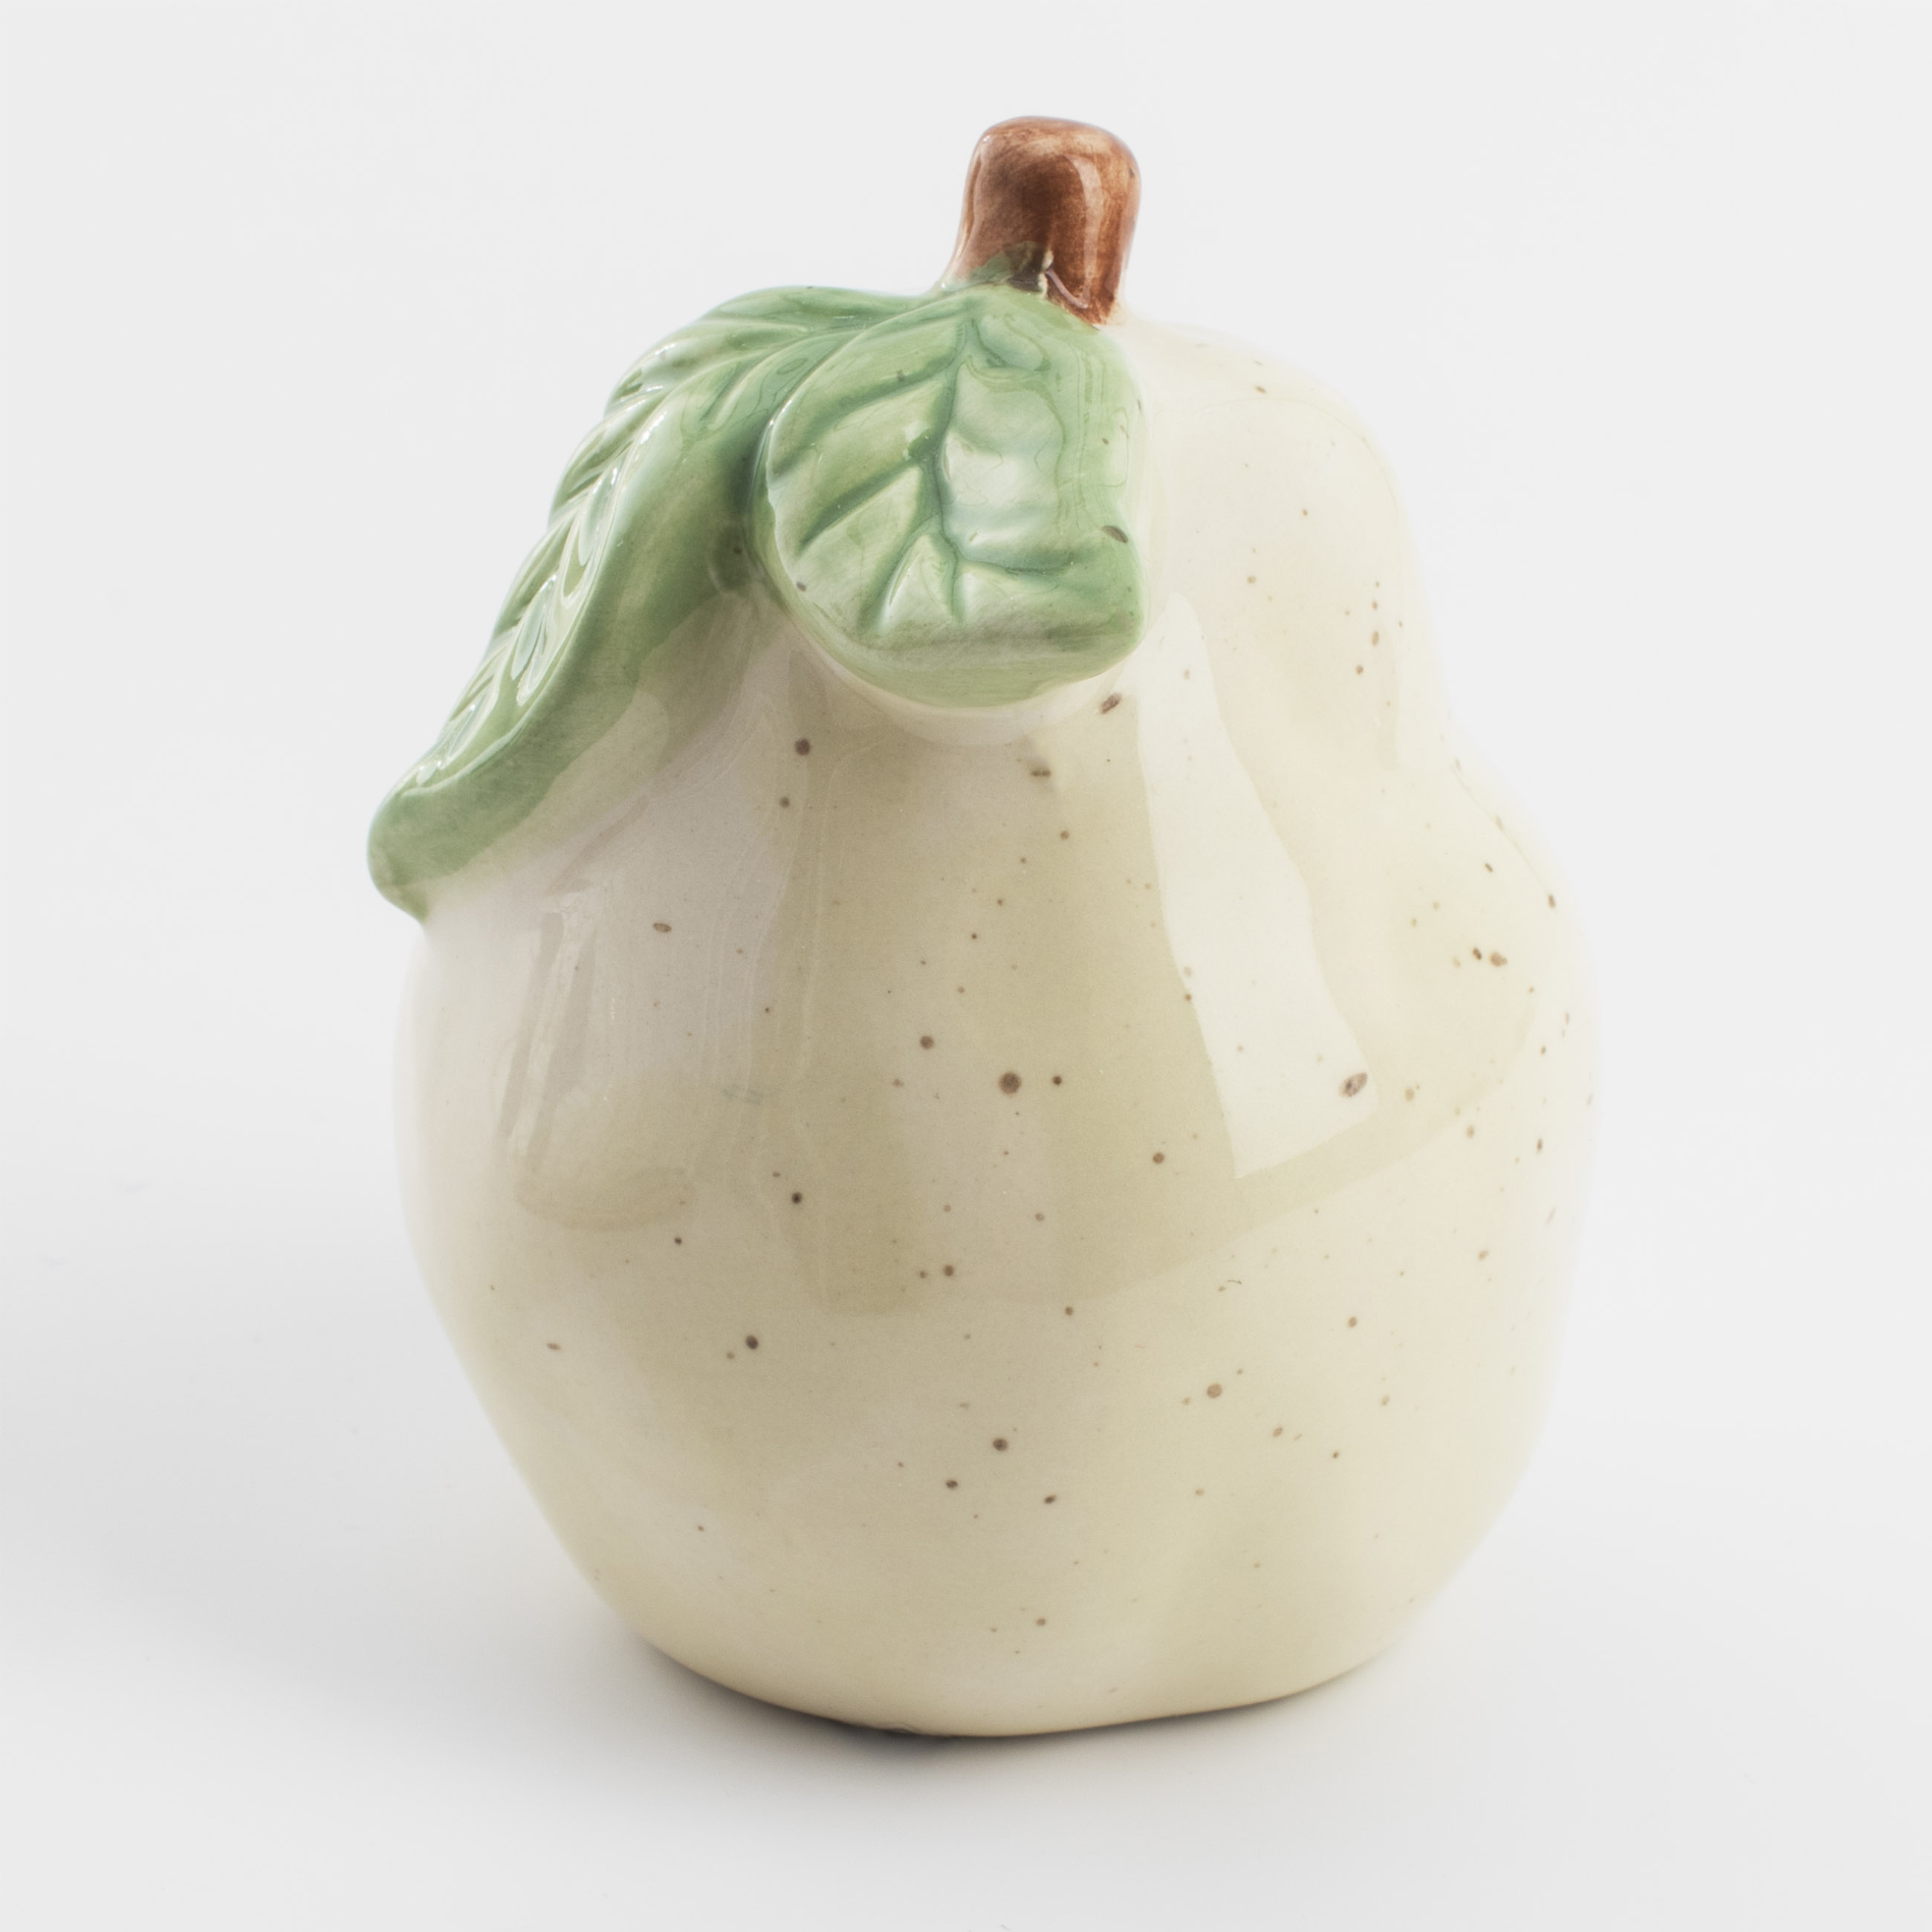 Емкость для соли или перца, 8 см, керамика, молочная, в крапинку, Груша, Fruit garden изображение № 4